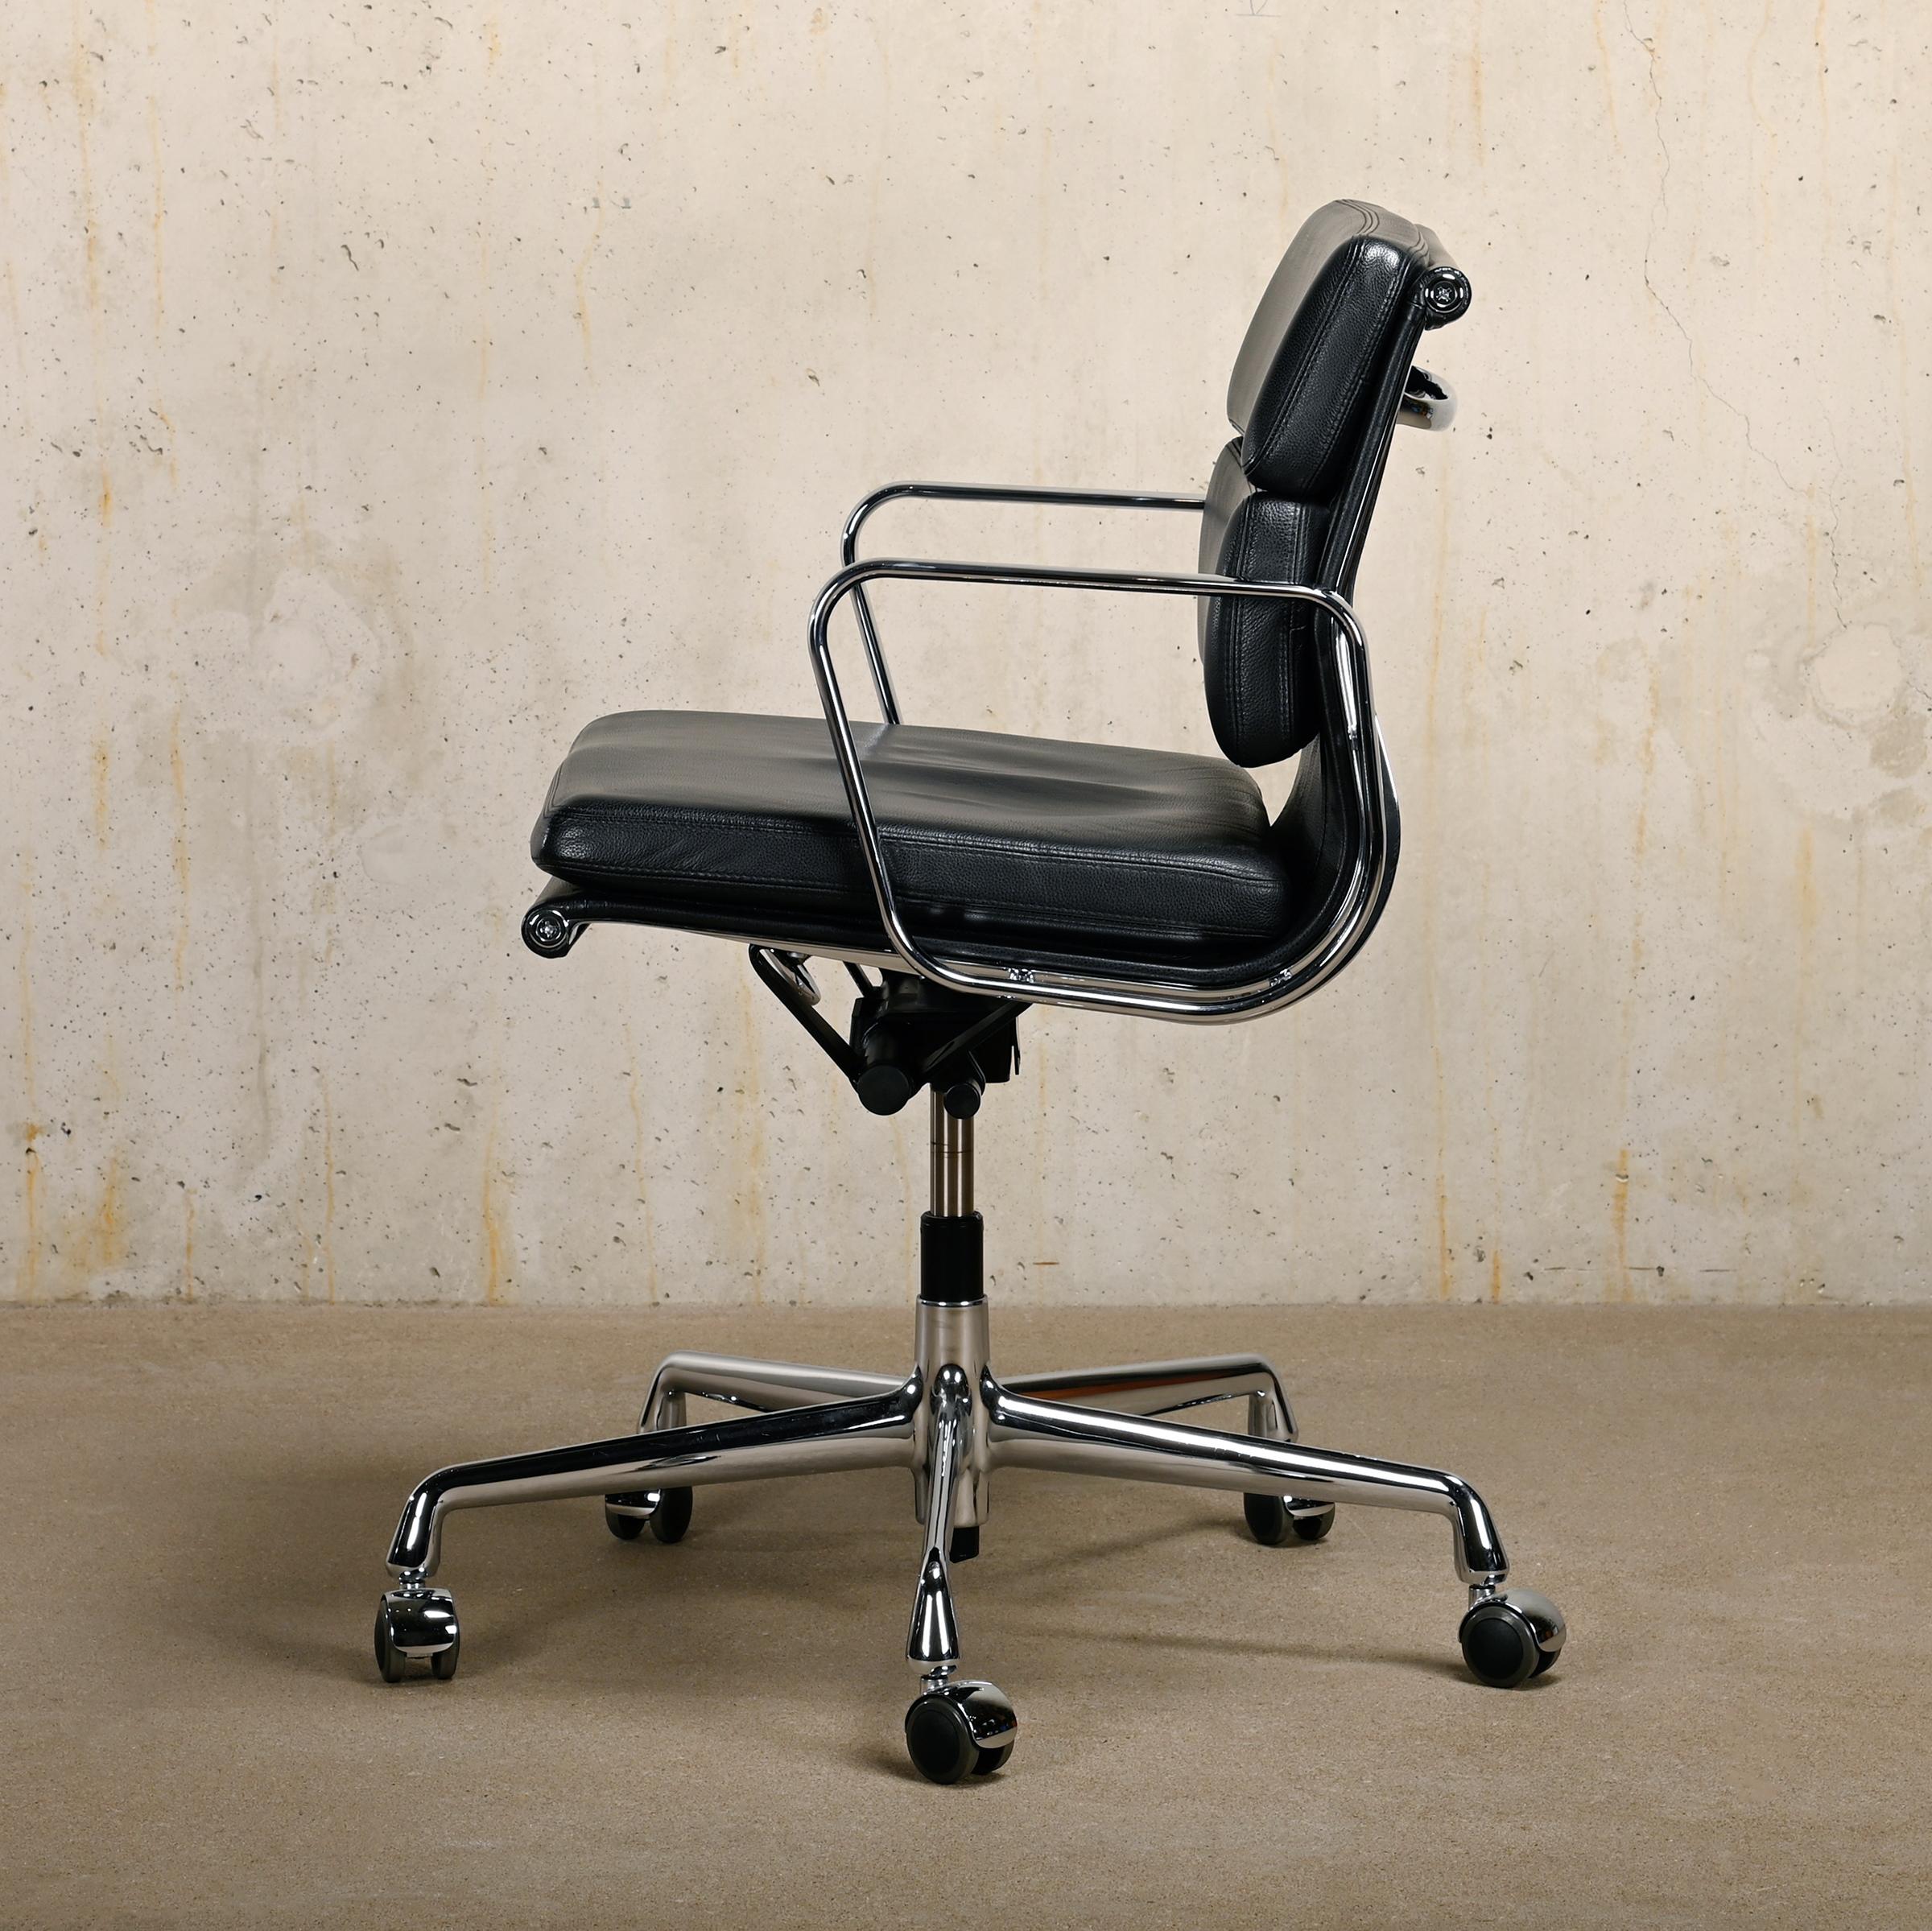 Magnifique chaise de bureau EA217 appartenant à la série iconique Aluminium Series conçue par Charles & Ray Eames pour Herman Miller (US) / Vitra (EU). Un confort exceptionnel est garanti grâce aux coussins en cuir souple, au réglage en hauteur et